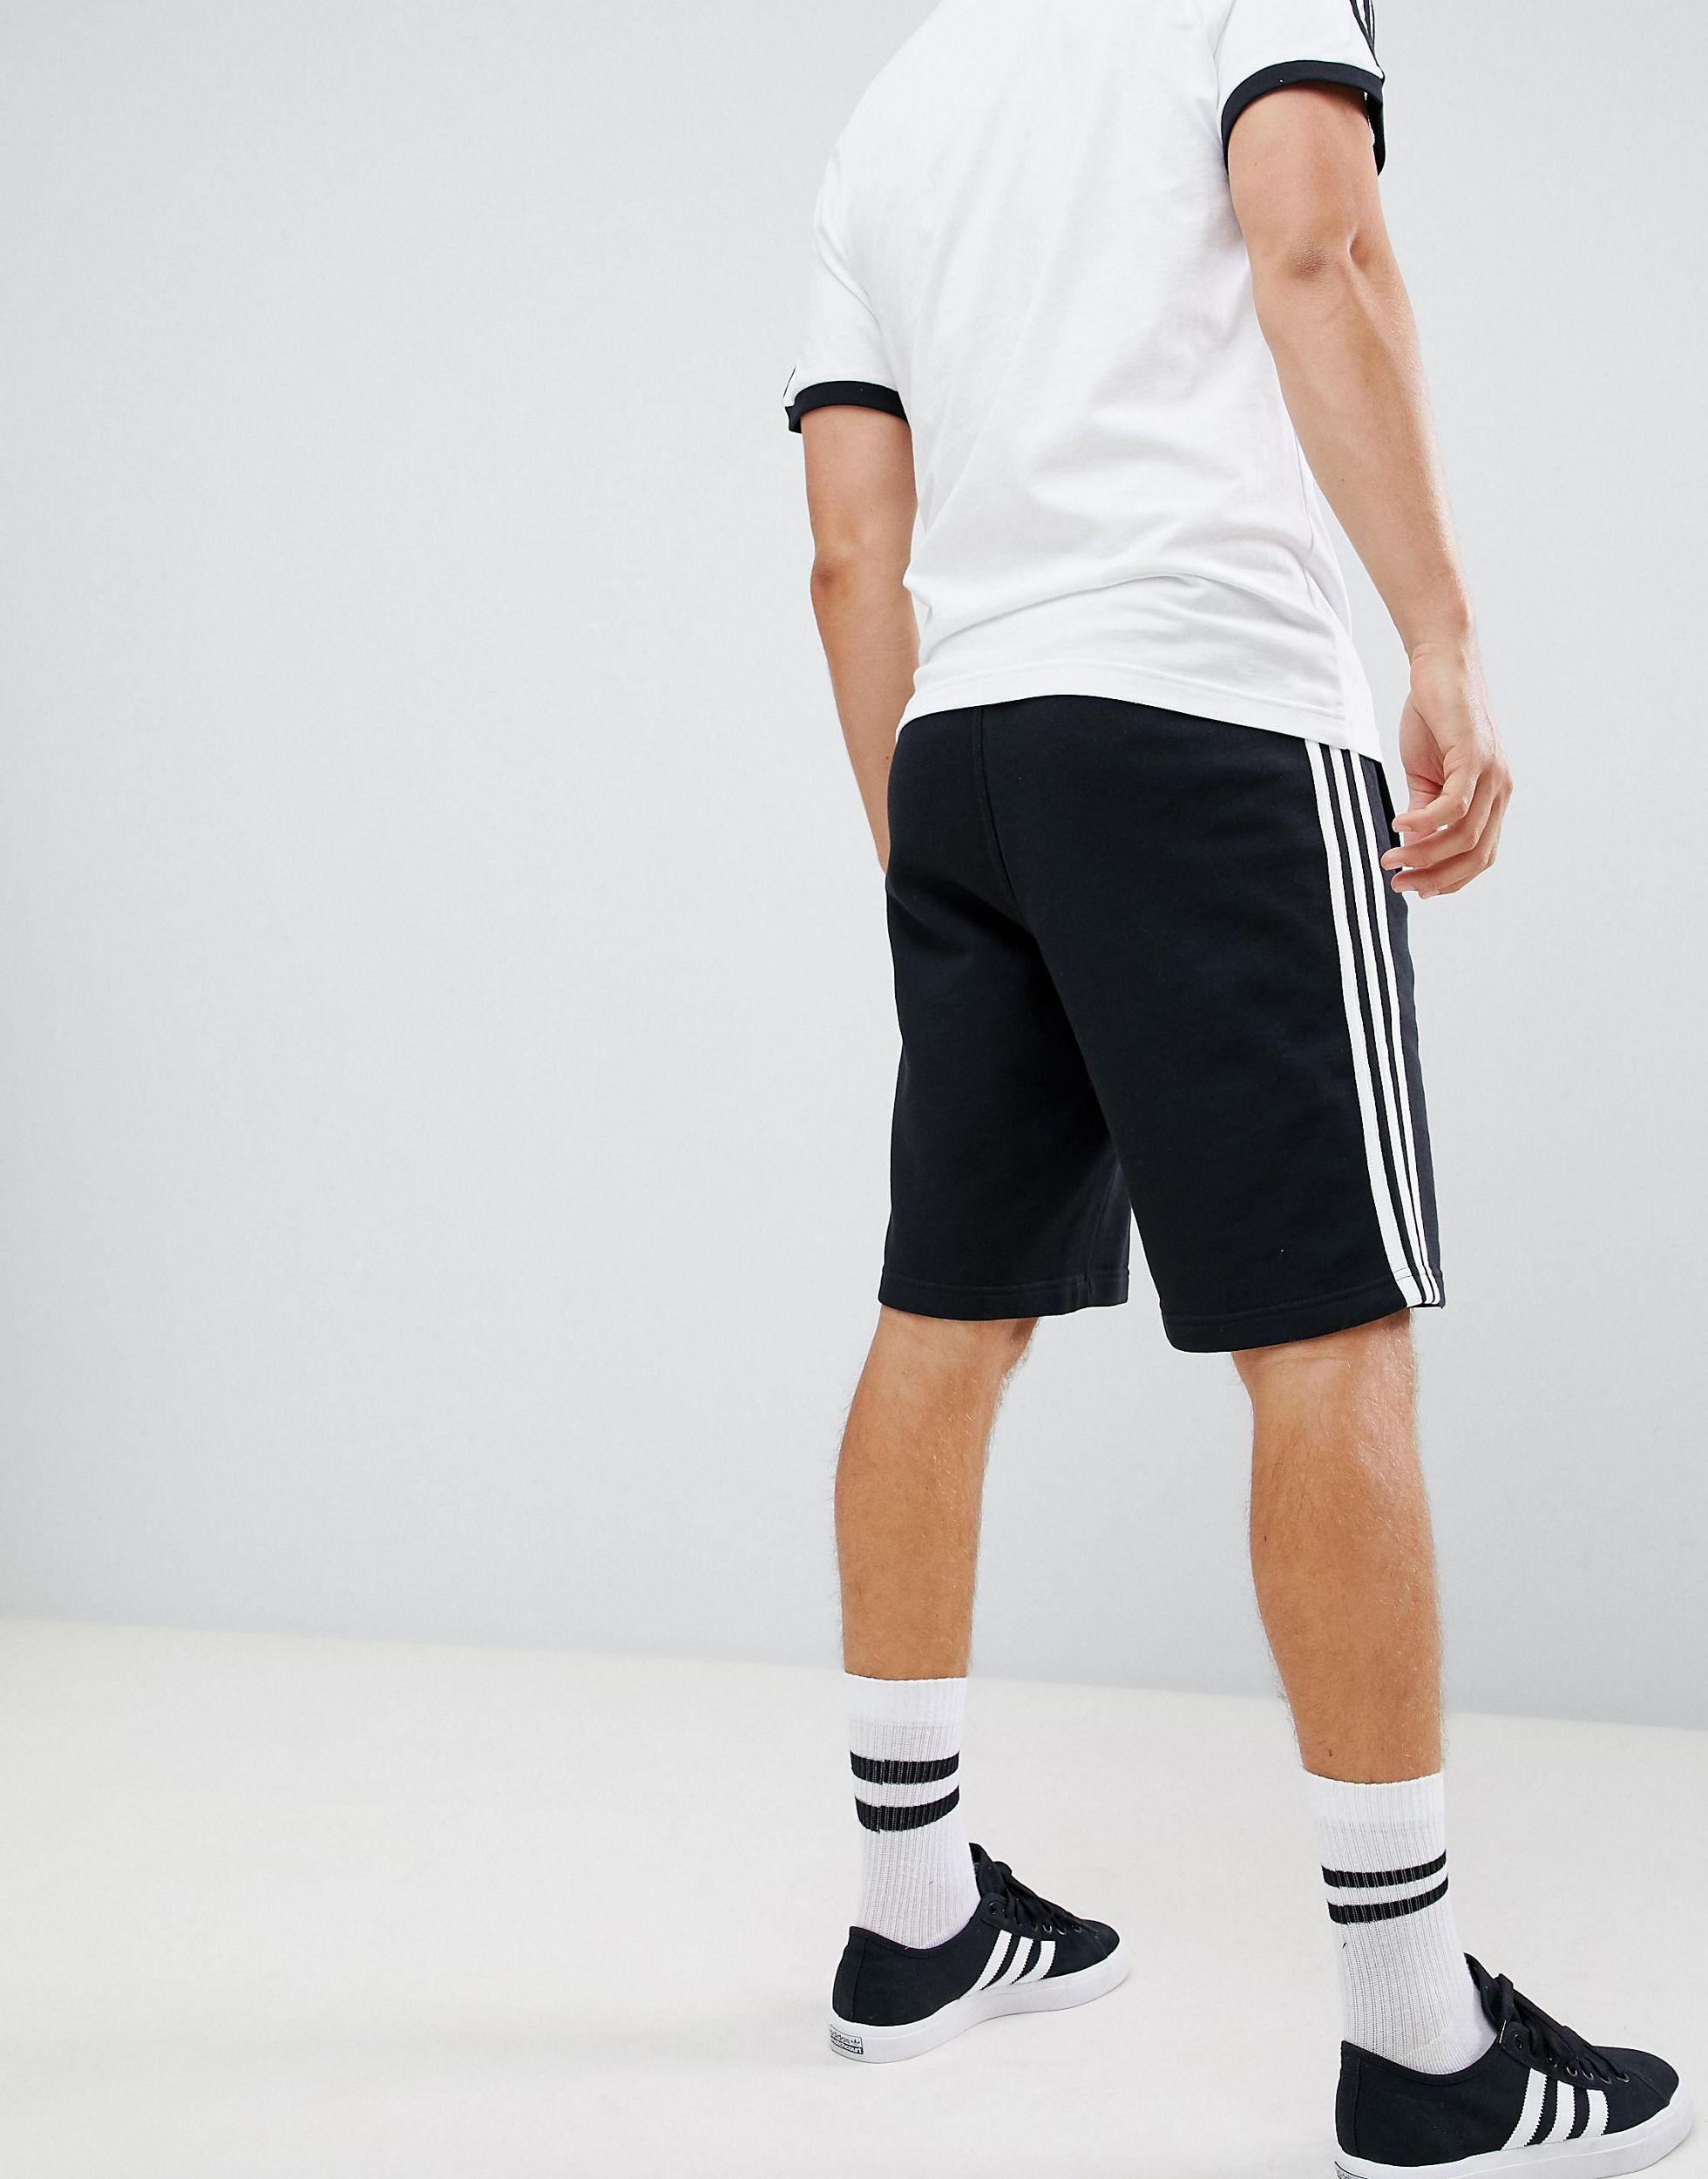 adidas Originals Adicolor Three Stripe Shorts in Black for Men - Lyst